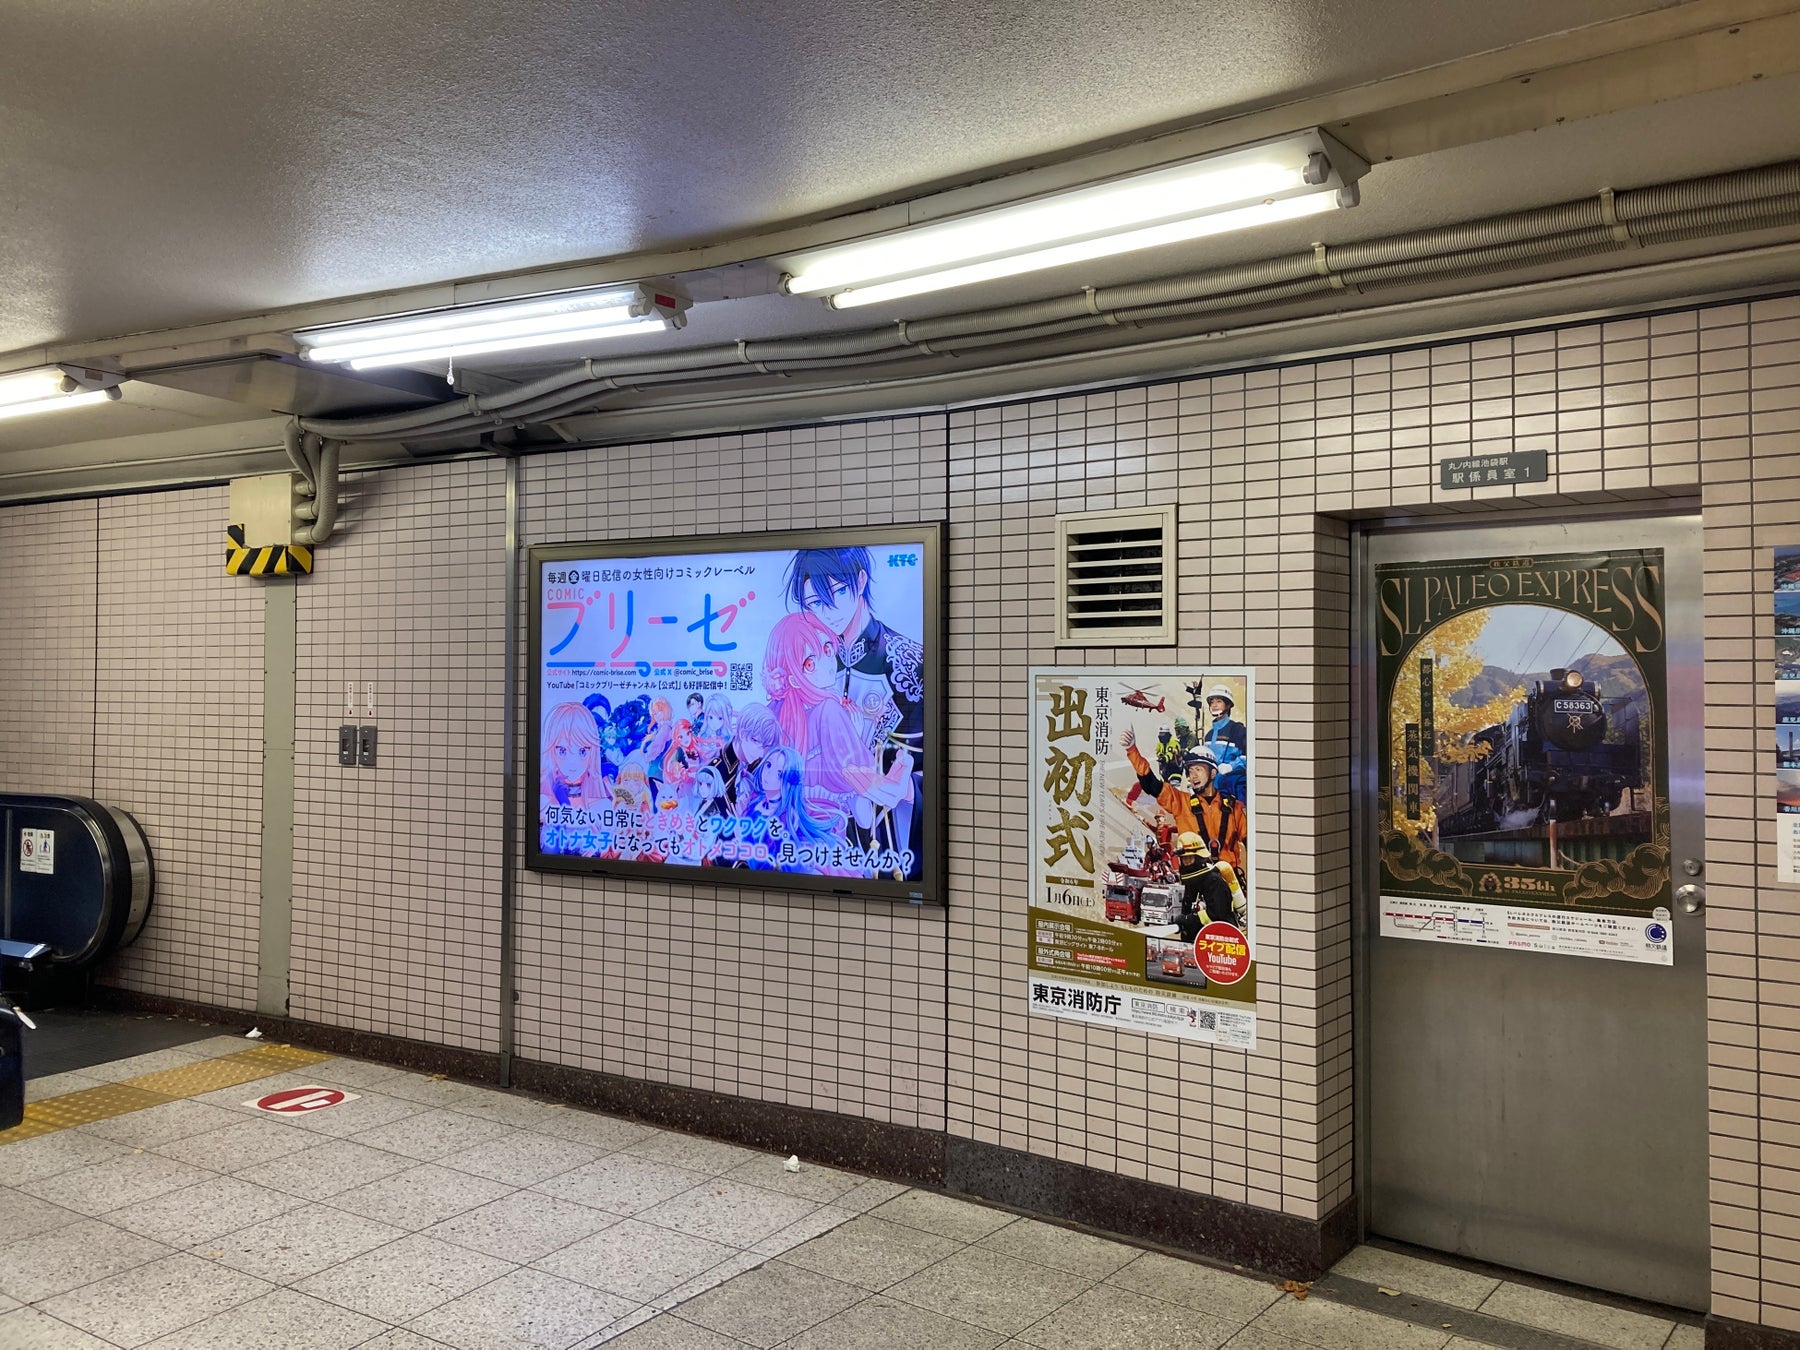 東京メトロ丸ノ内線池袋駅コンコースにある「コミックブリーゼ」電照看板のデザインを変更いたしました